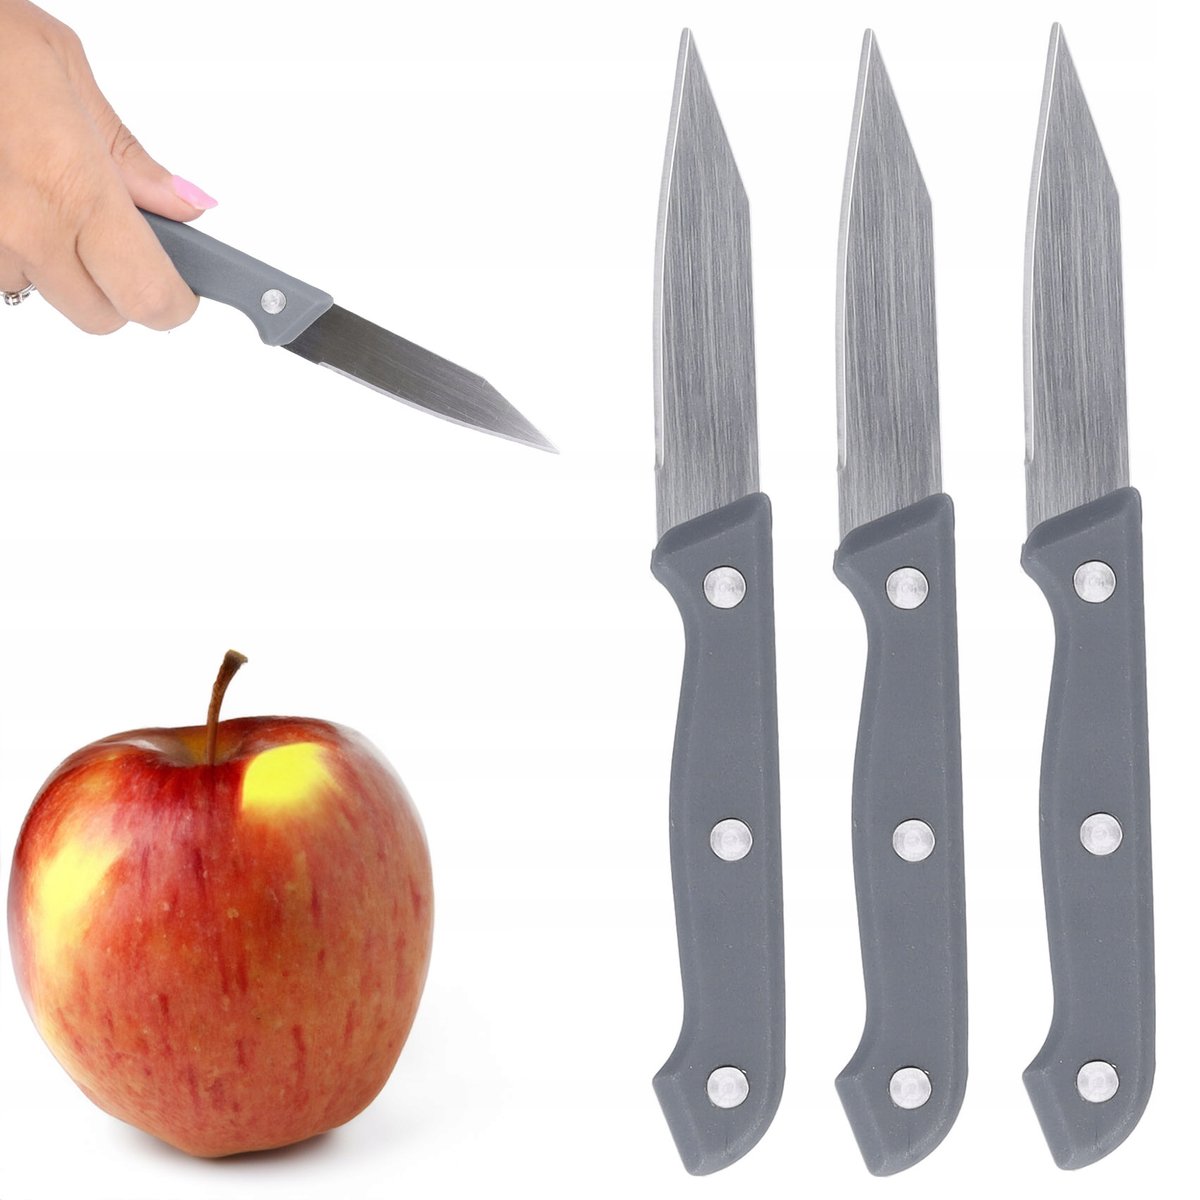 Zdjęcia - Nóż stołowy Noże kuchenne nóż do warzyw obierak zestaw 3 szt